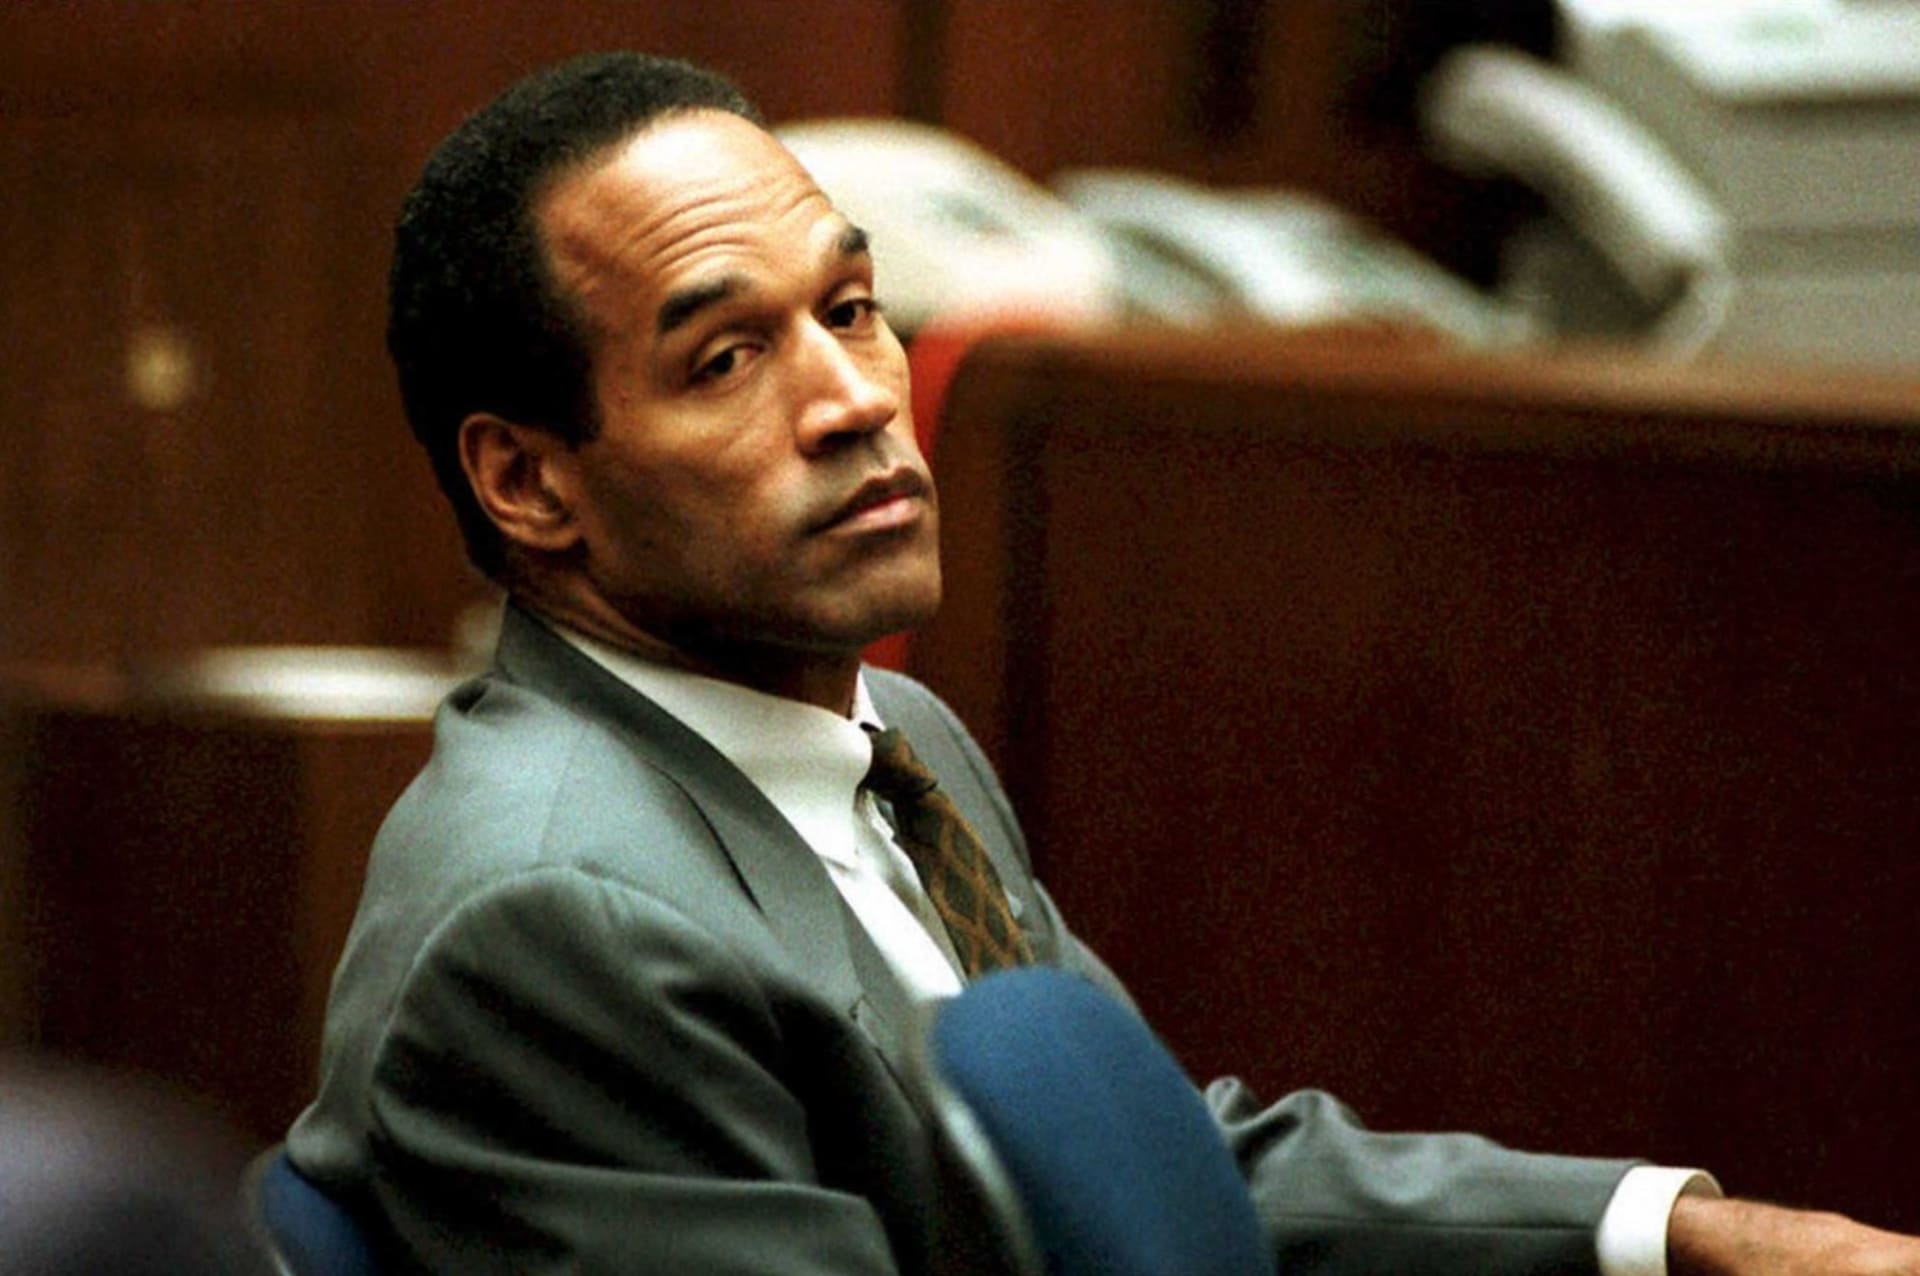 O.J. Simpson během tzv. procesu století v roce 1994 ve kterém čelil obžalobě z dvojnásobné vraždy.